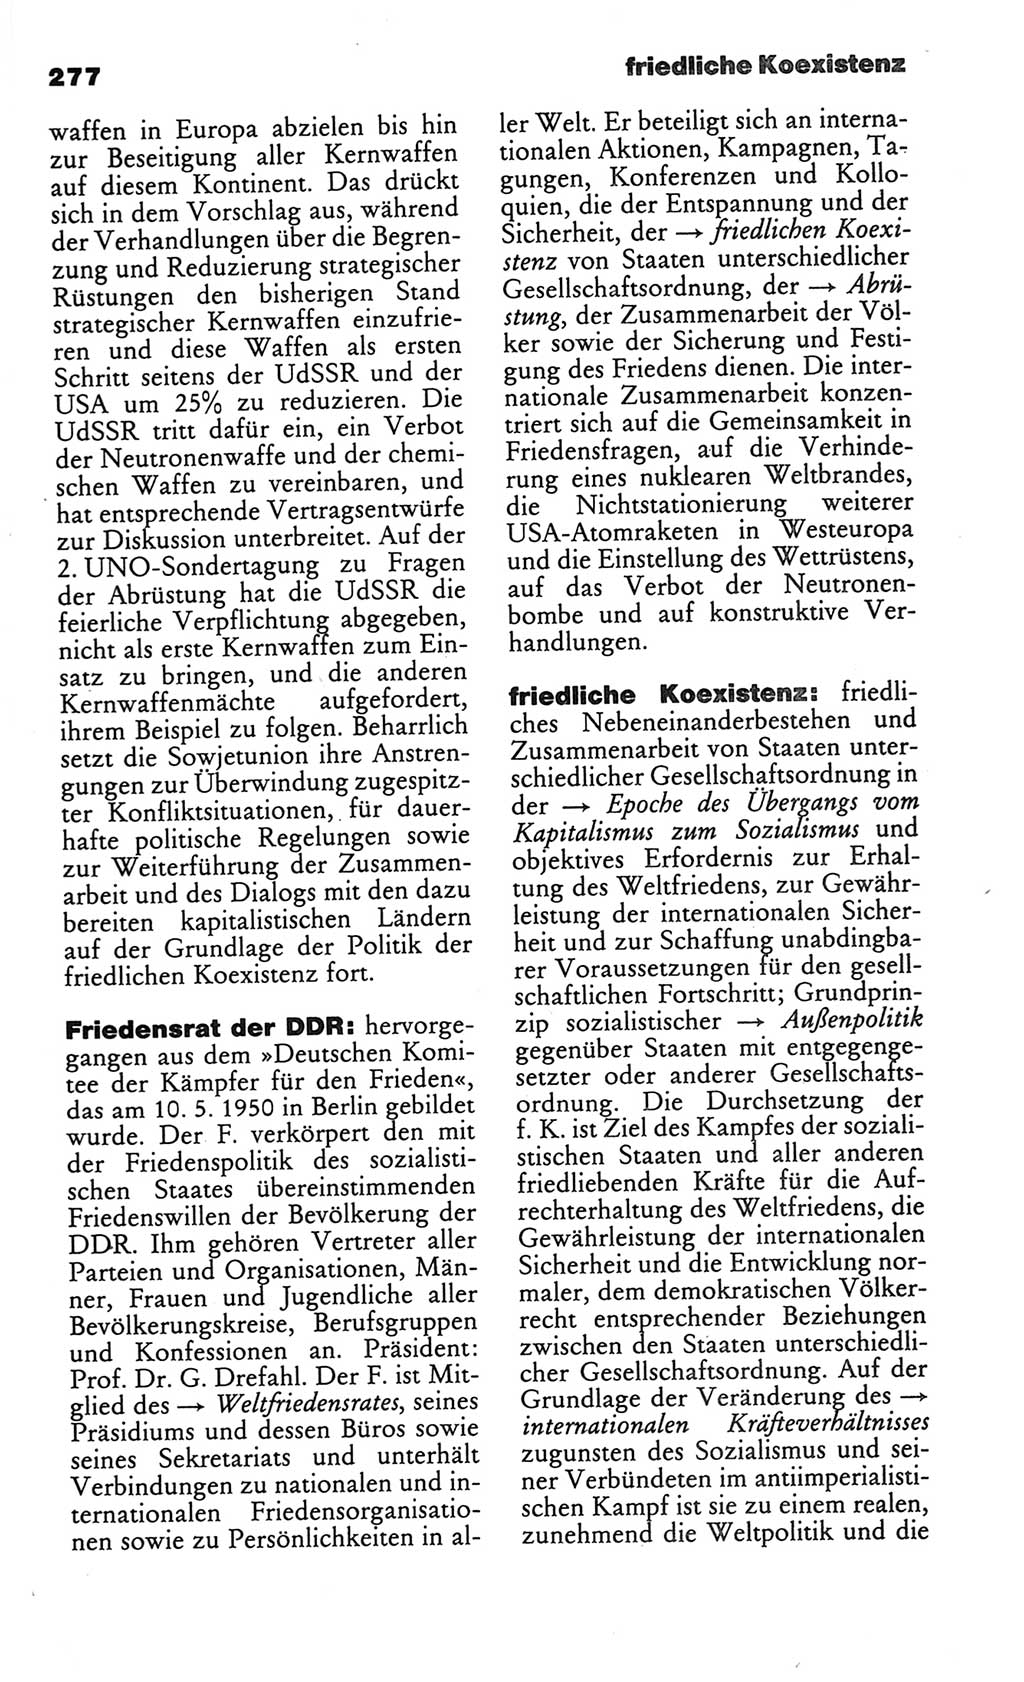 Kleines politisches Wörterbuch [Deutsche Demokratische Republik (DDR)] 1986, Seite 277 (Kl. pol. Wb. DDR 1986, S. 277)